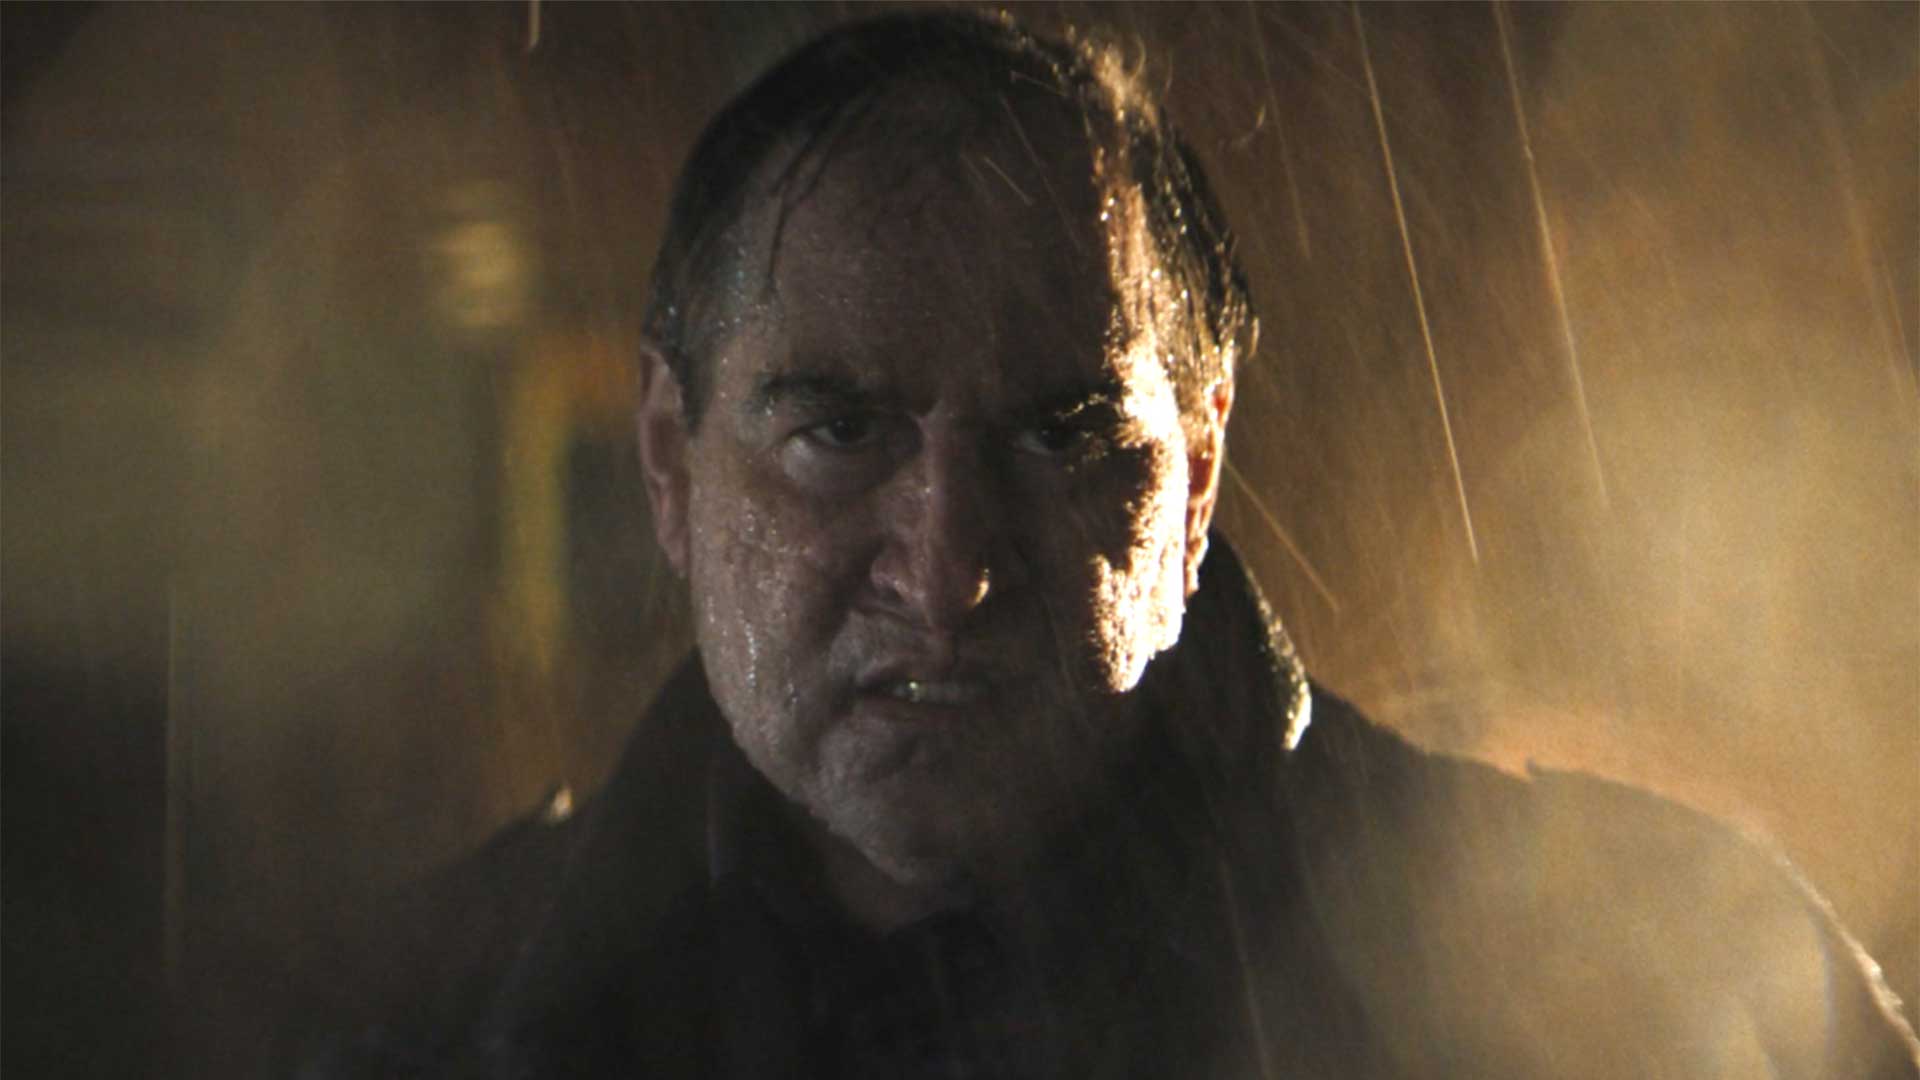 چهره حجیم و گریم شده کالین فارل در نقش آزوالد کاپلبات یا پنگوئن فیلم The Batman زیر باران